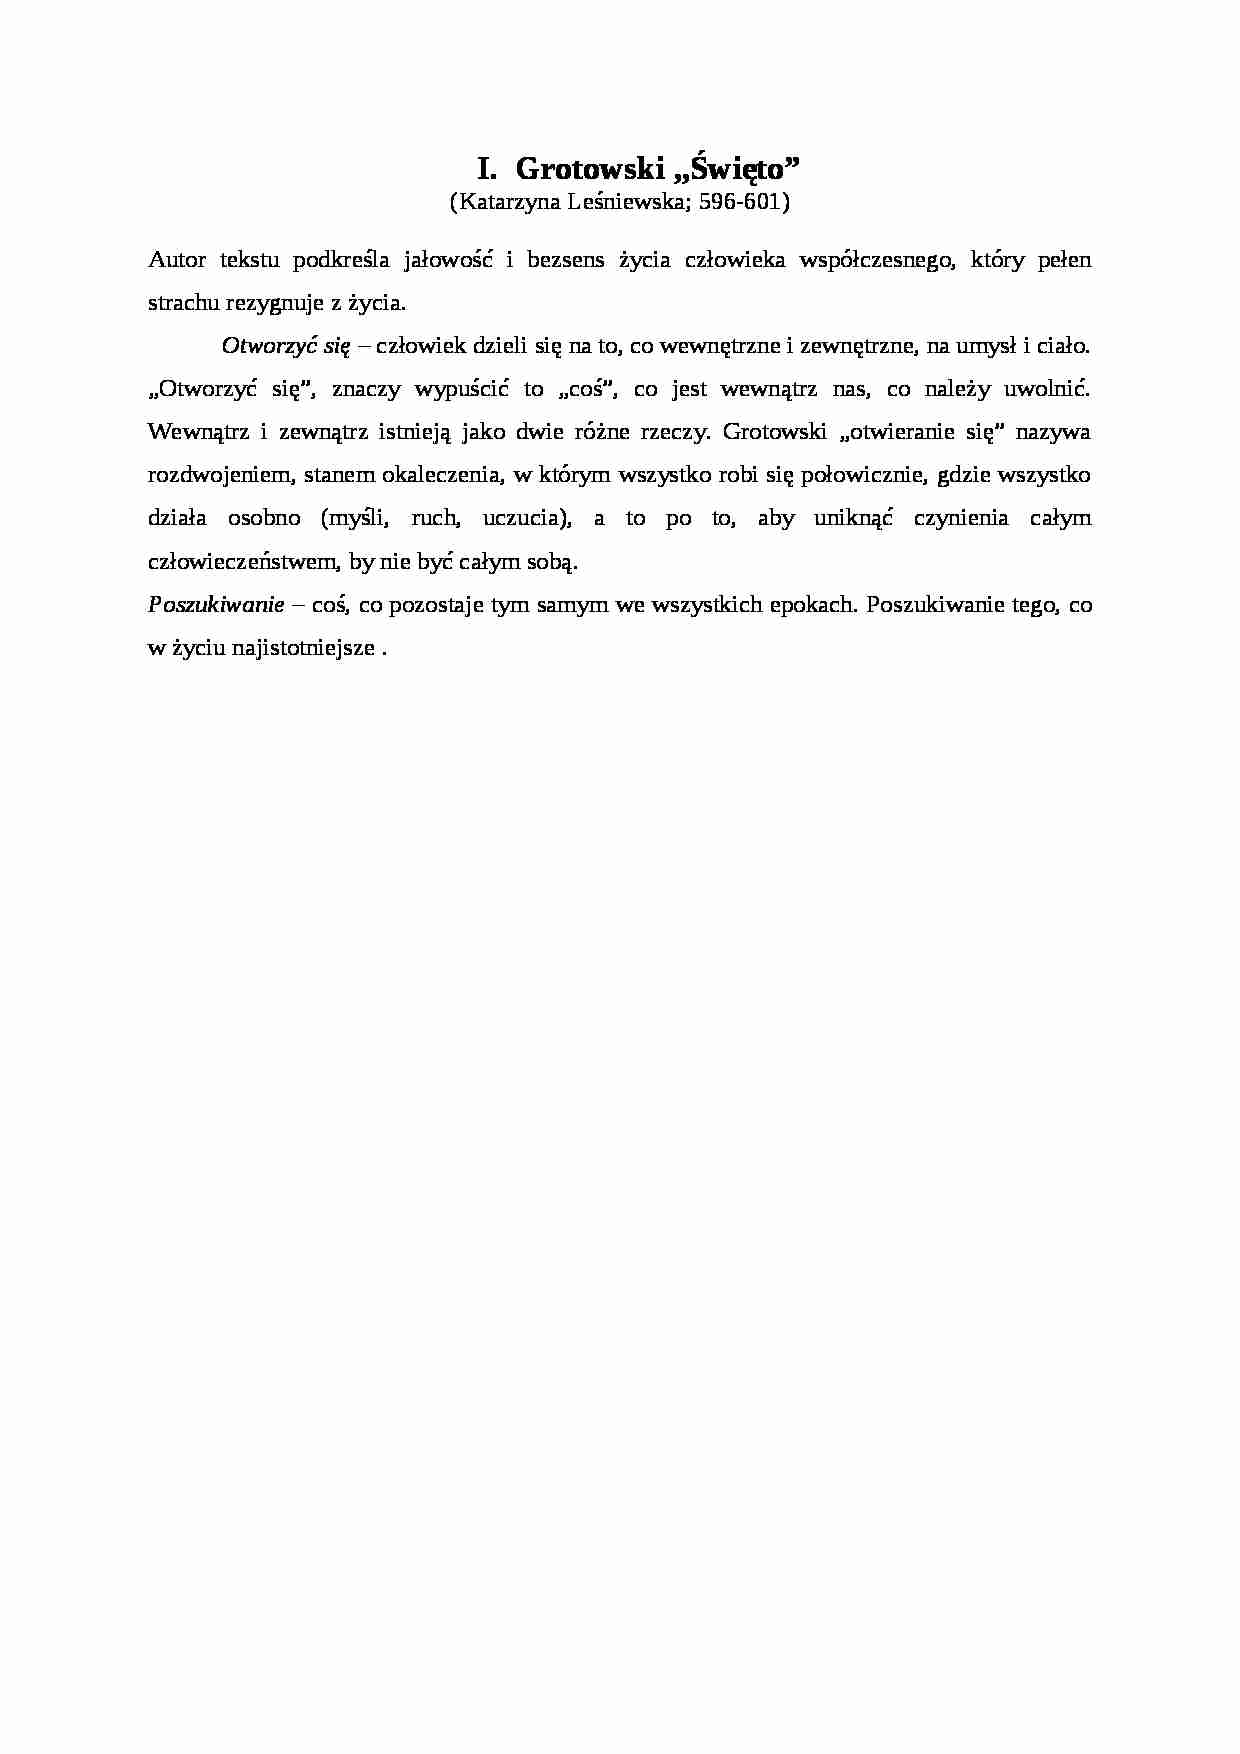 Opracowania, Grotowski- Święto - strona 1